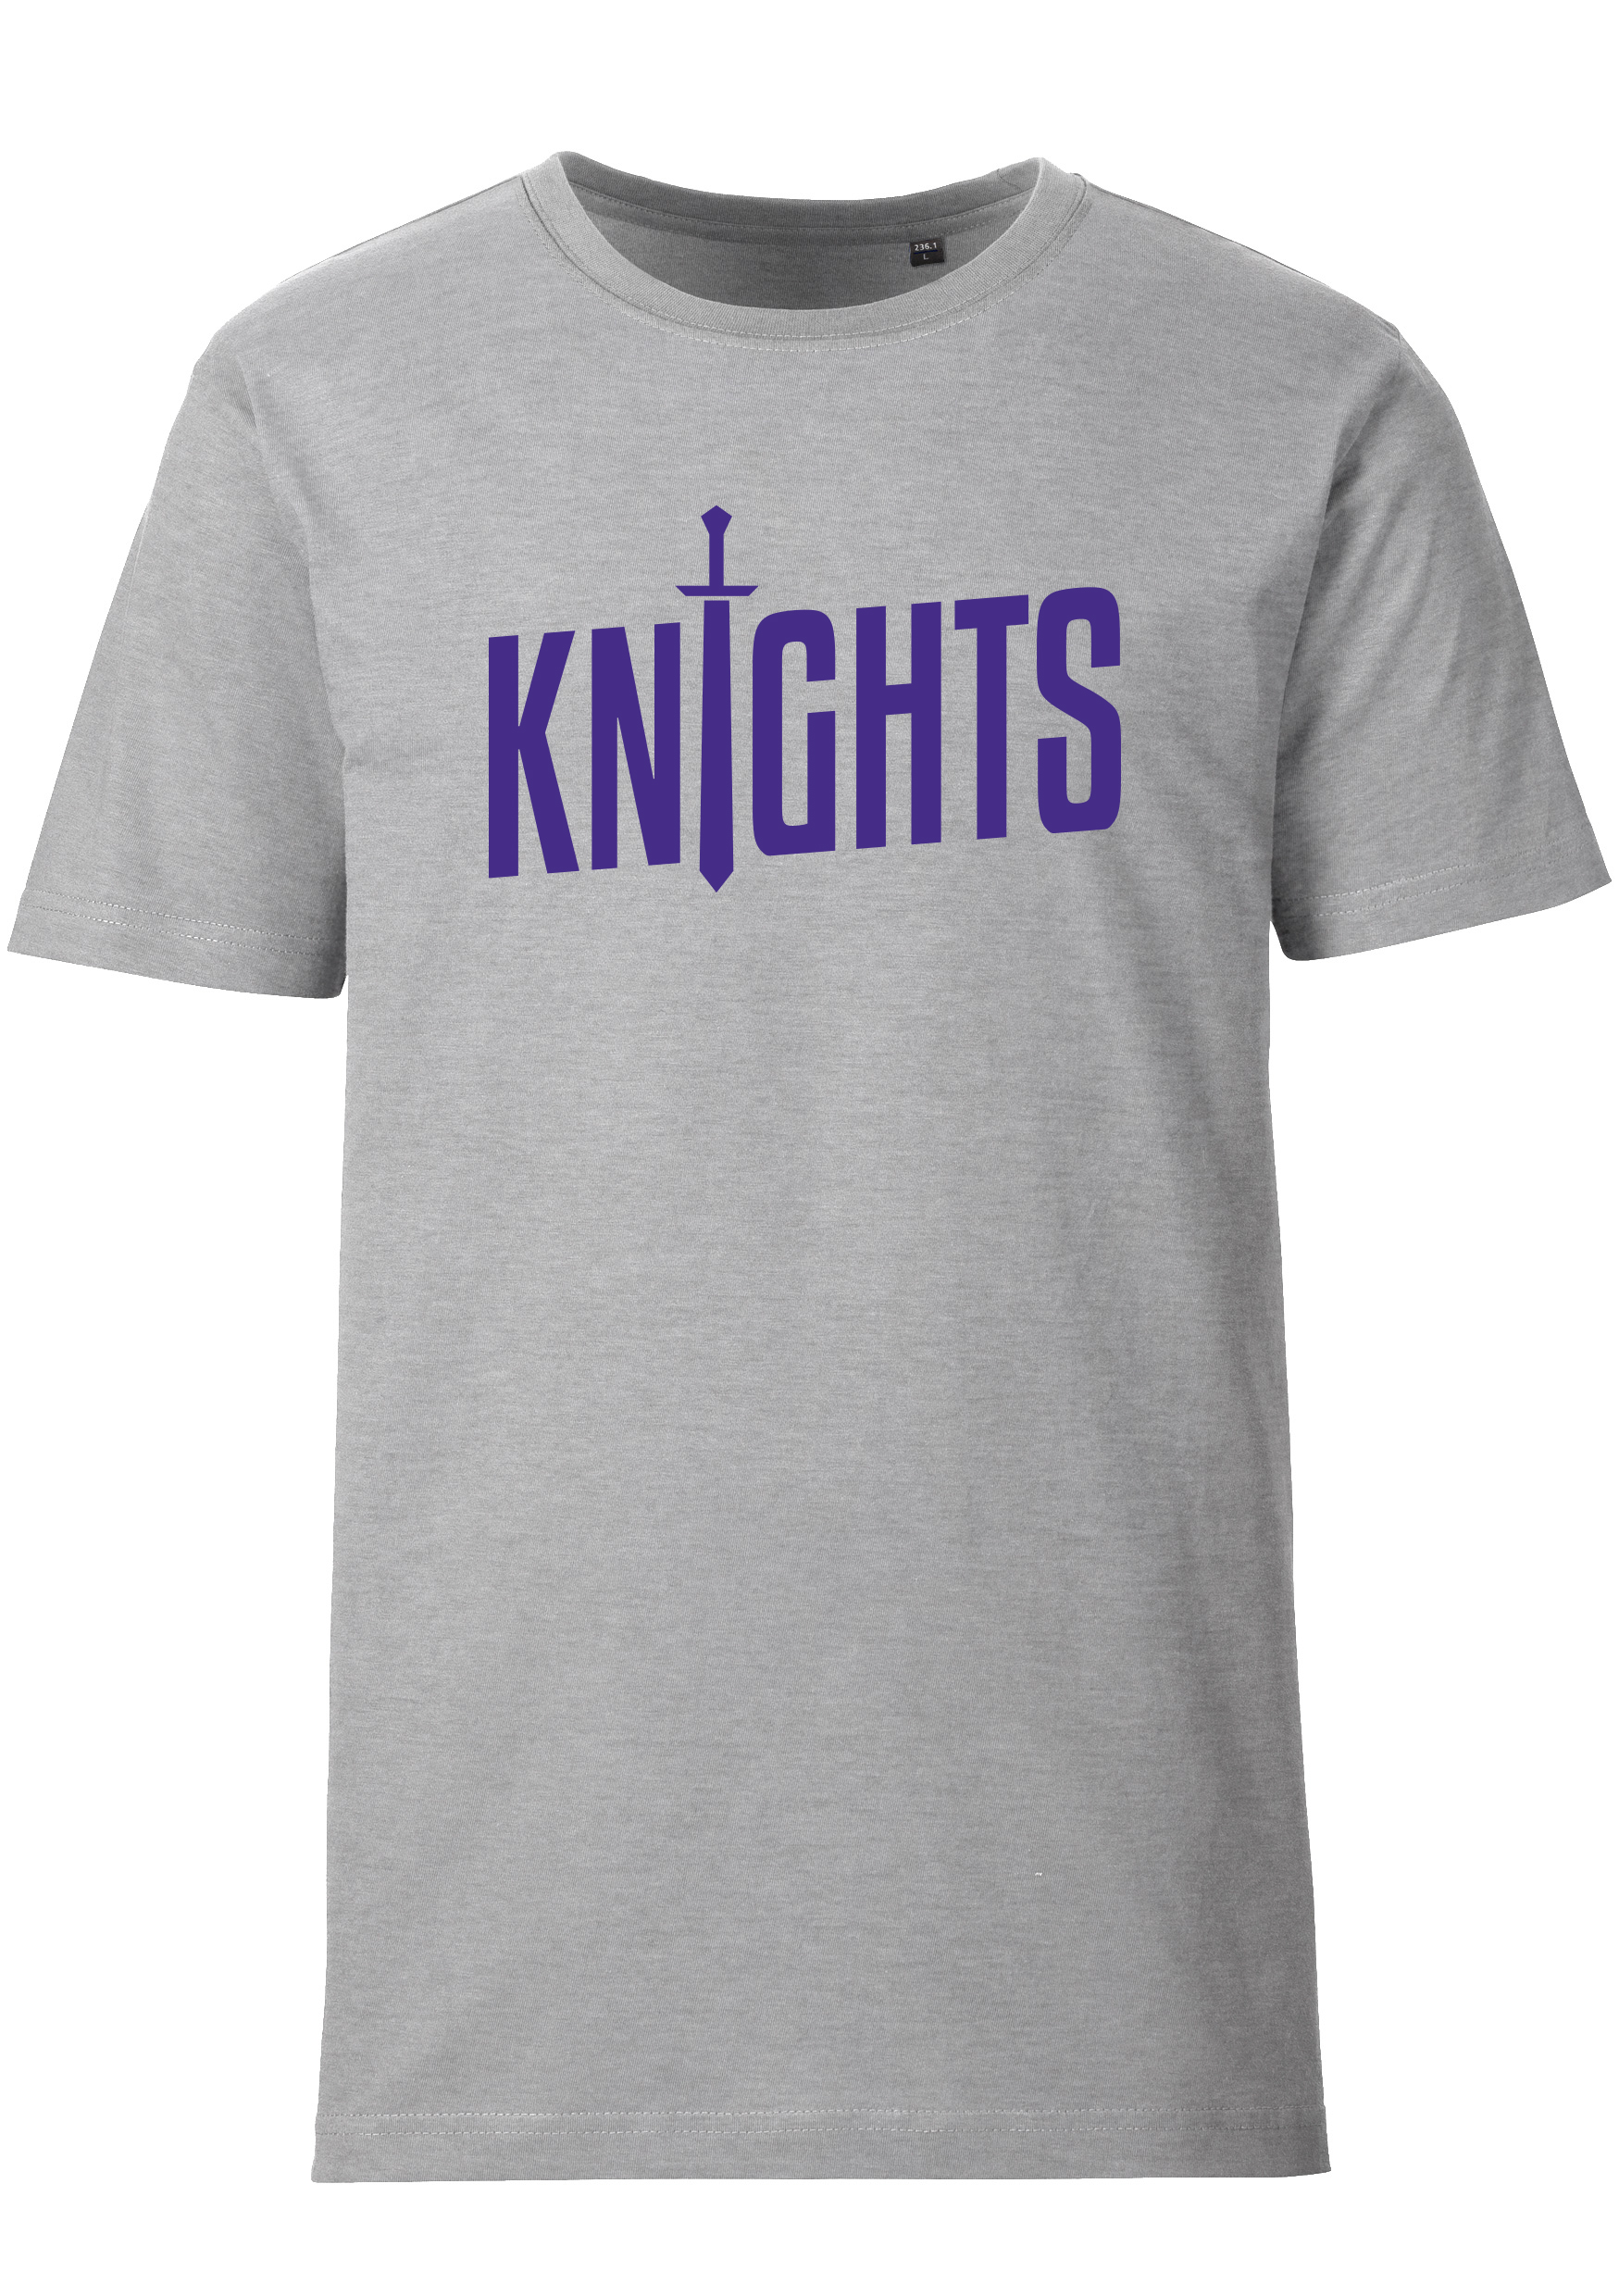 Schwaben Knights T-Shirt mit Schriftzug